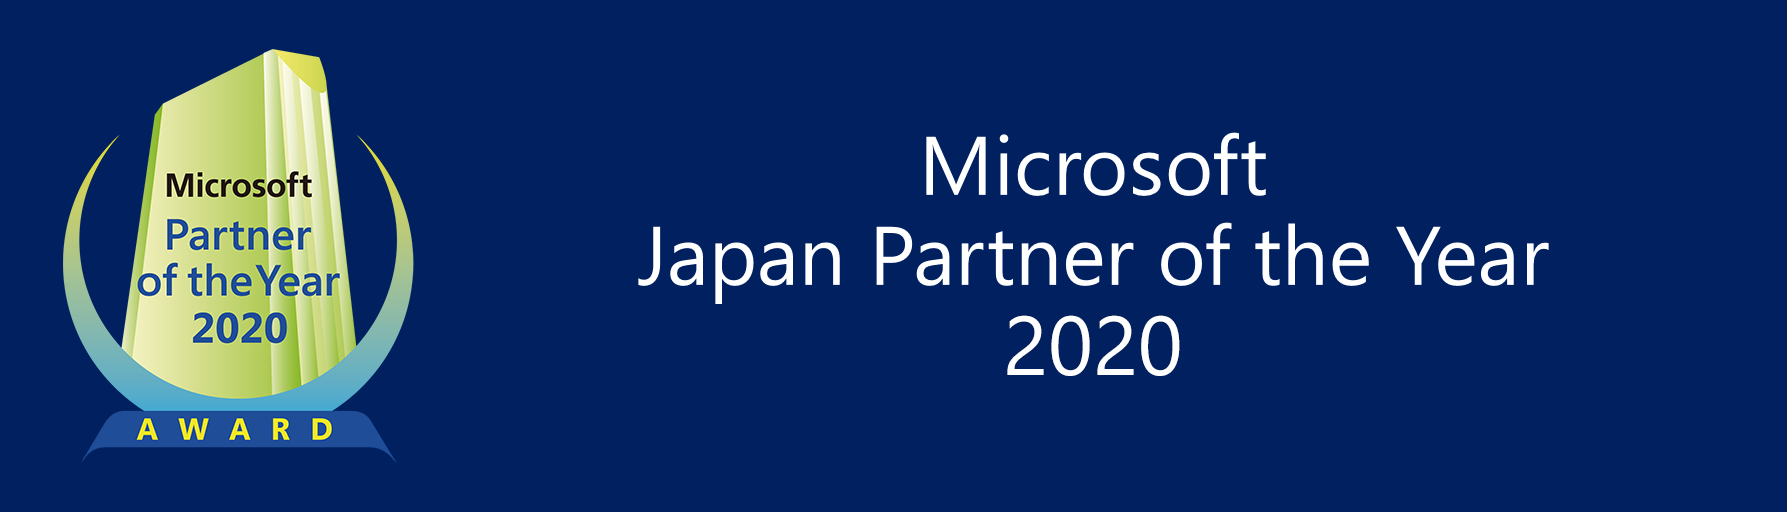 マイクロソフト ジャパン パートナー オブ ザ イヤー 2020 - Microsoft Japan Partner of the Year 2020